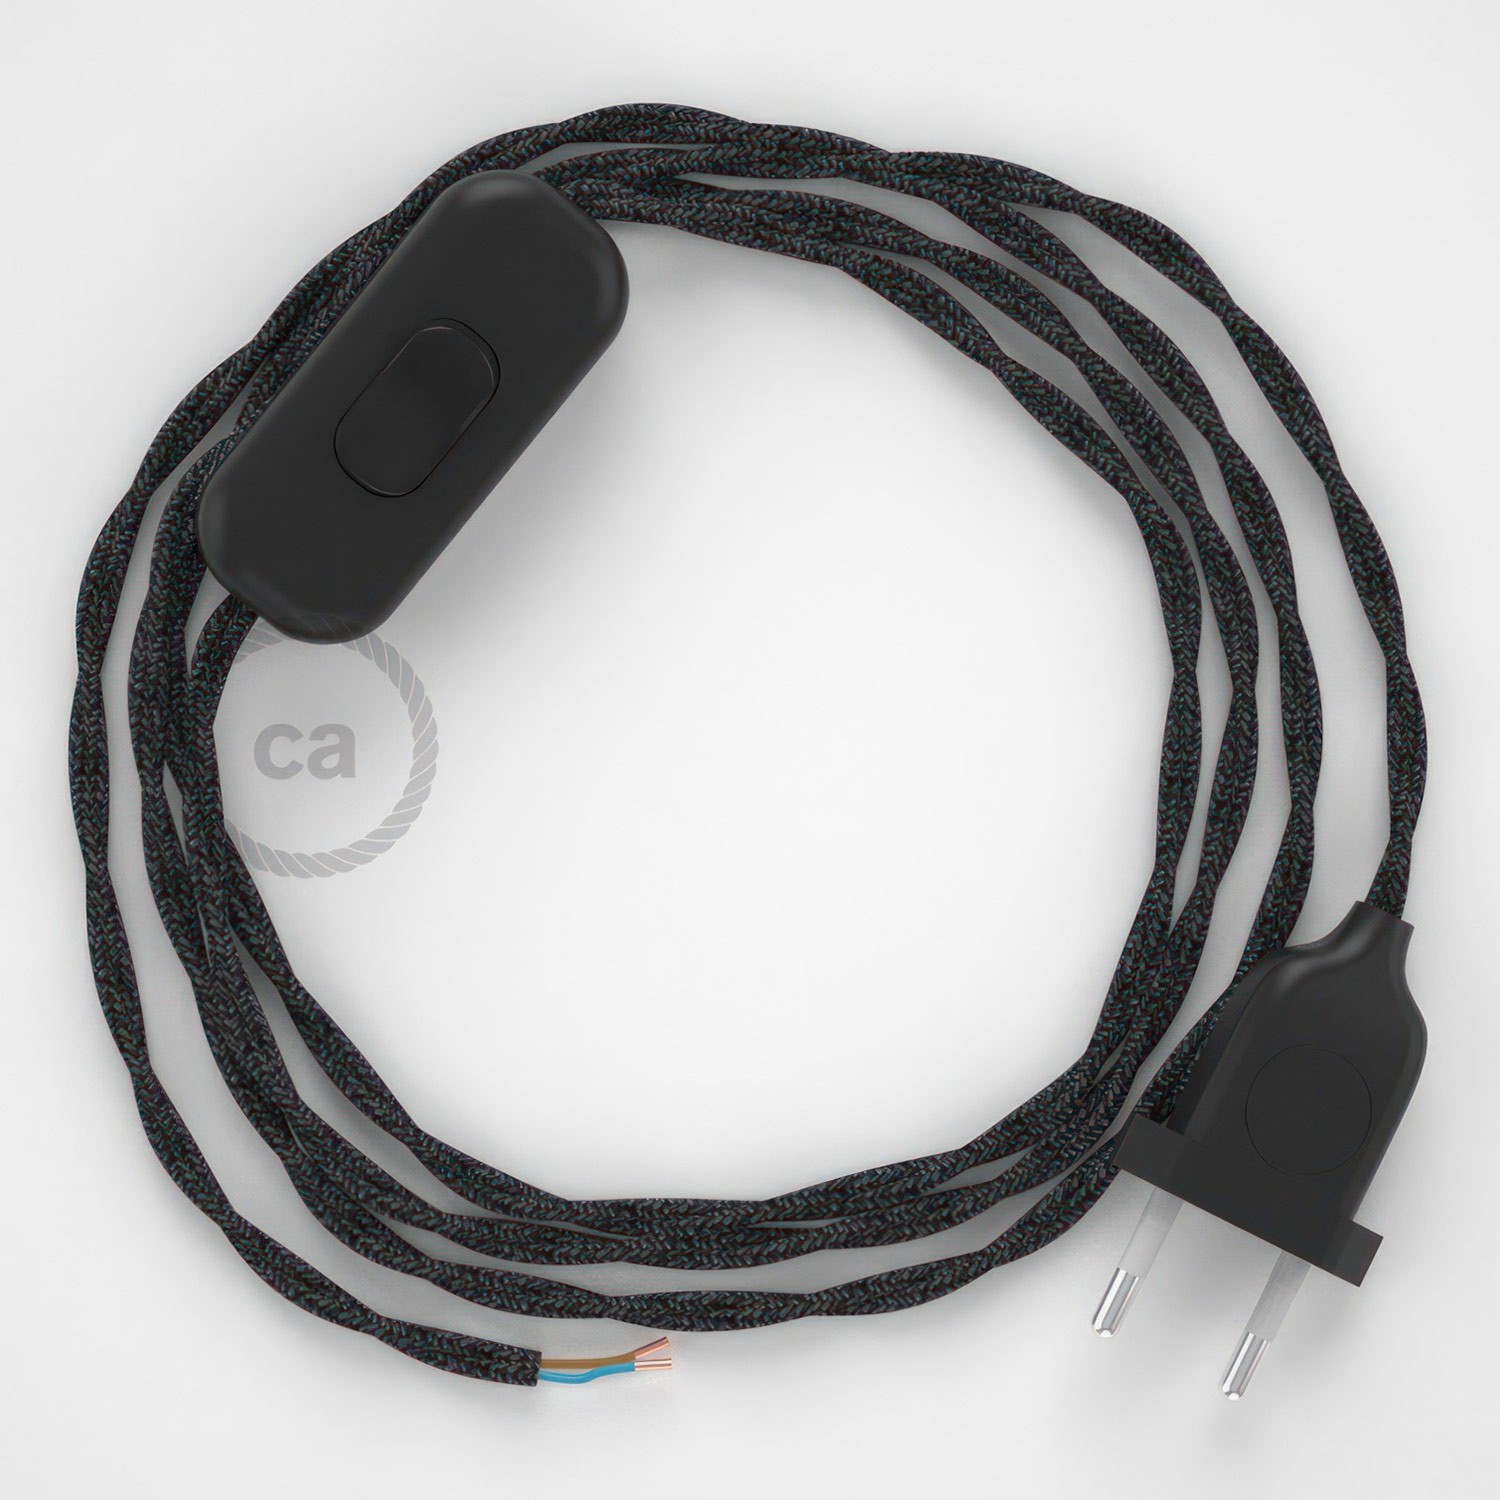 Cableado para lámpara, cable TN03 Lino Natural Antracita 1,8m. Elige tu el color de la clavija y del interruptor!